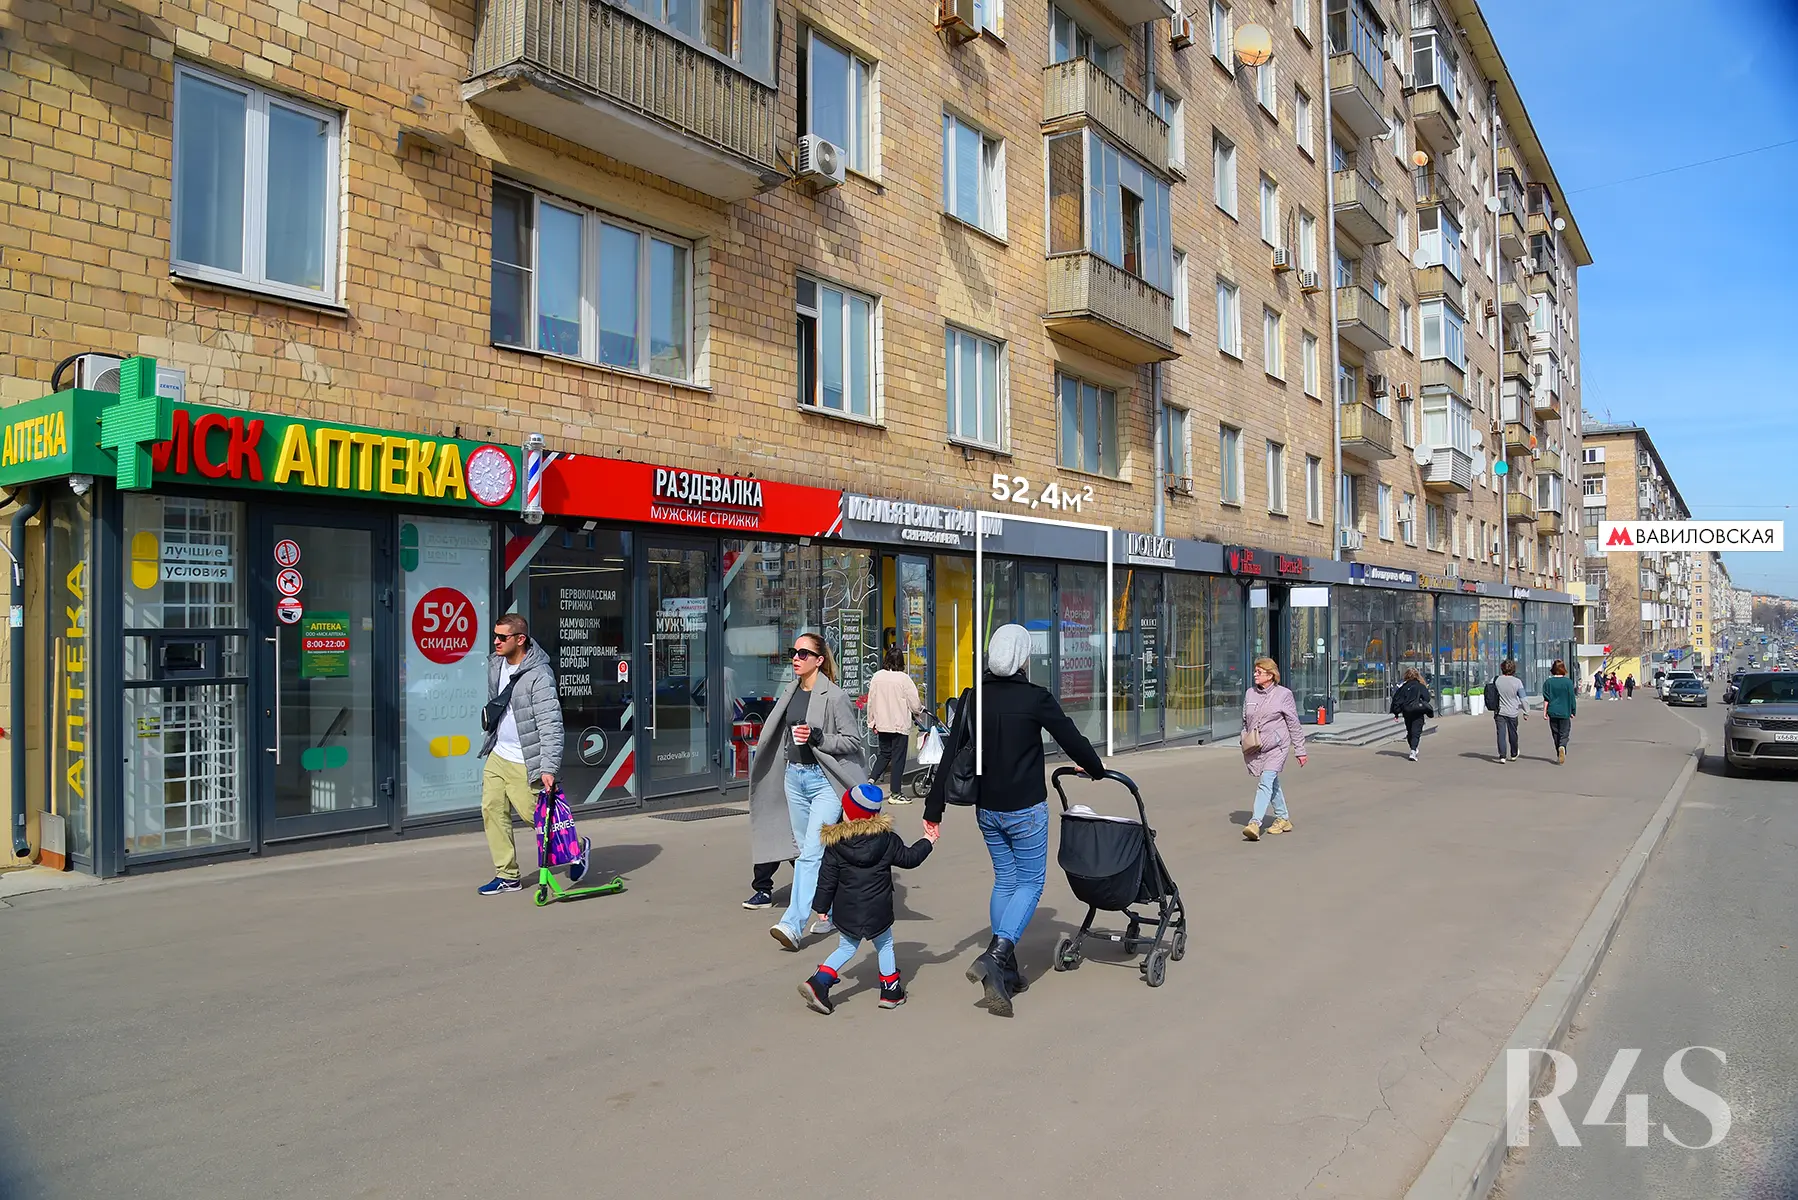 Продажа торгового помещения площадью 52.4 м2 в Москве: Ленинский проспект, 78 R4S | Realty4Sale